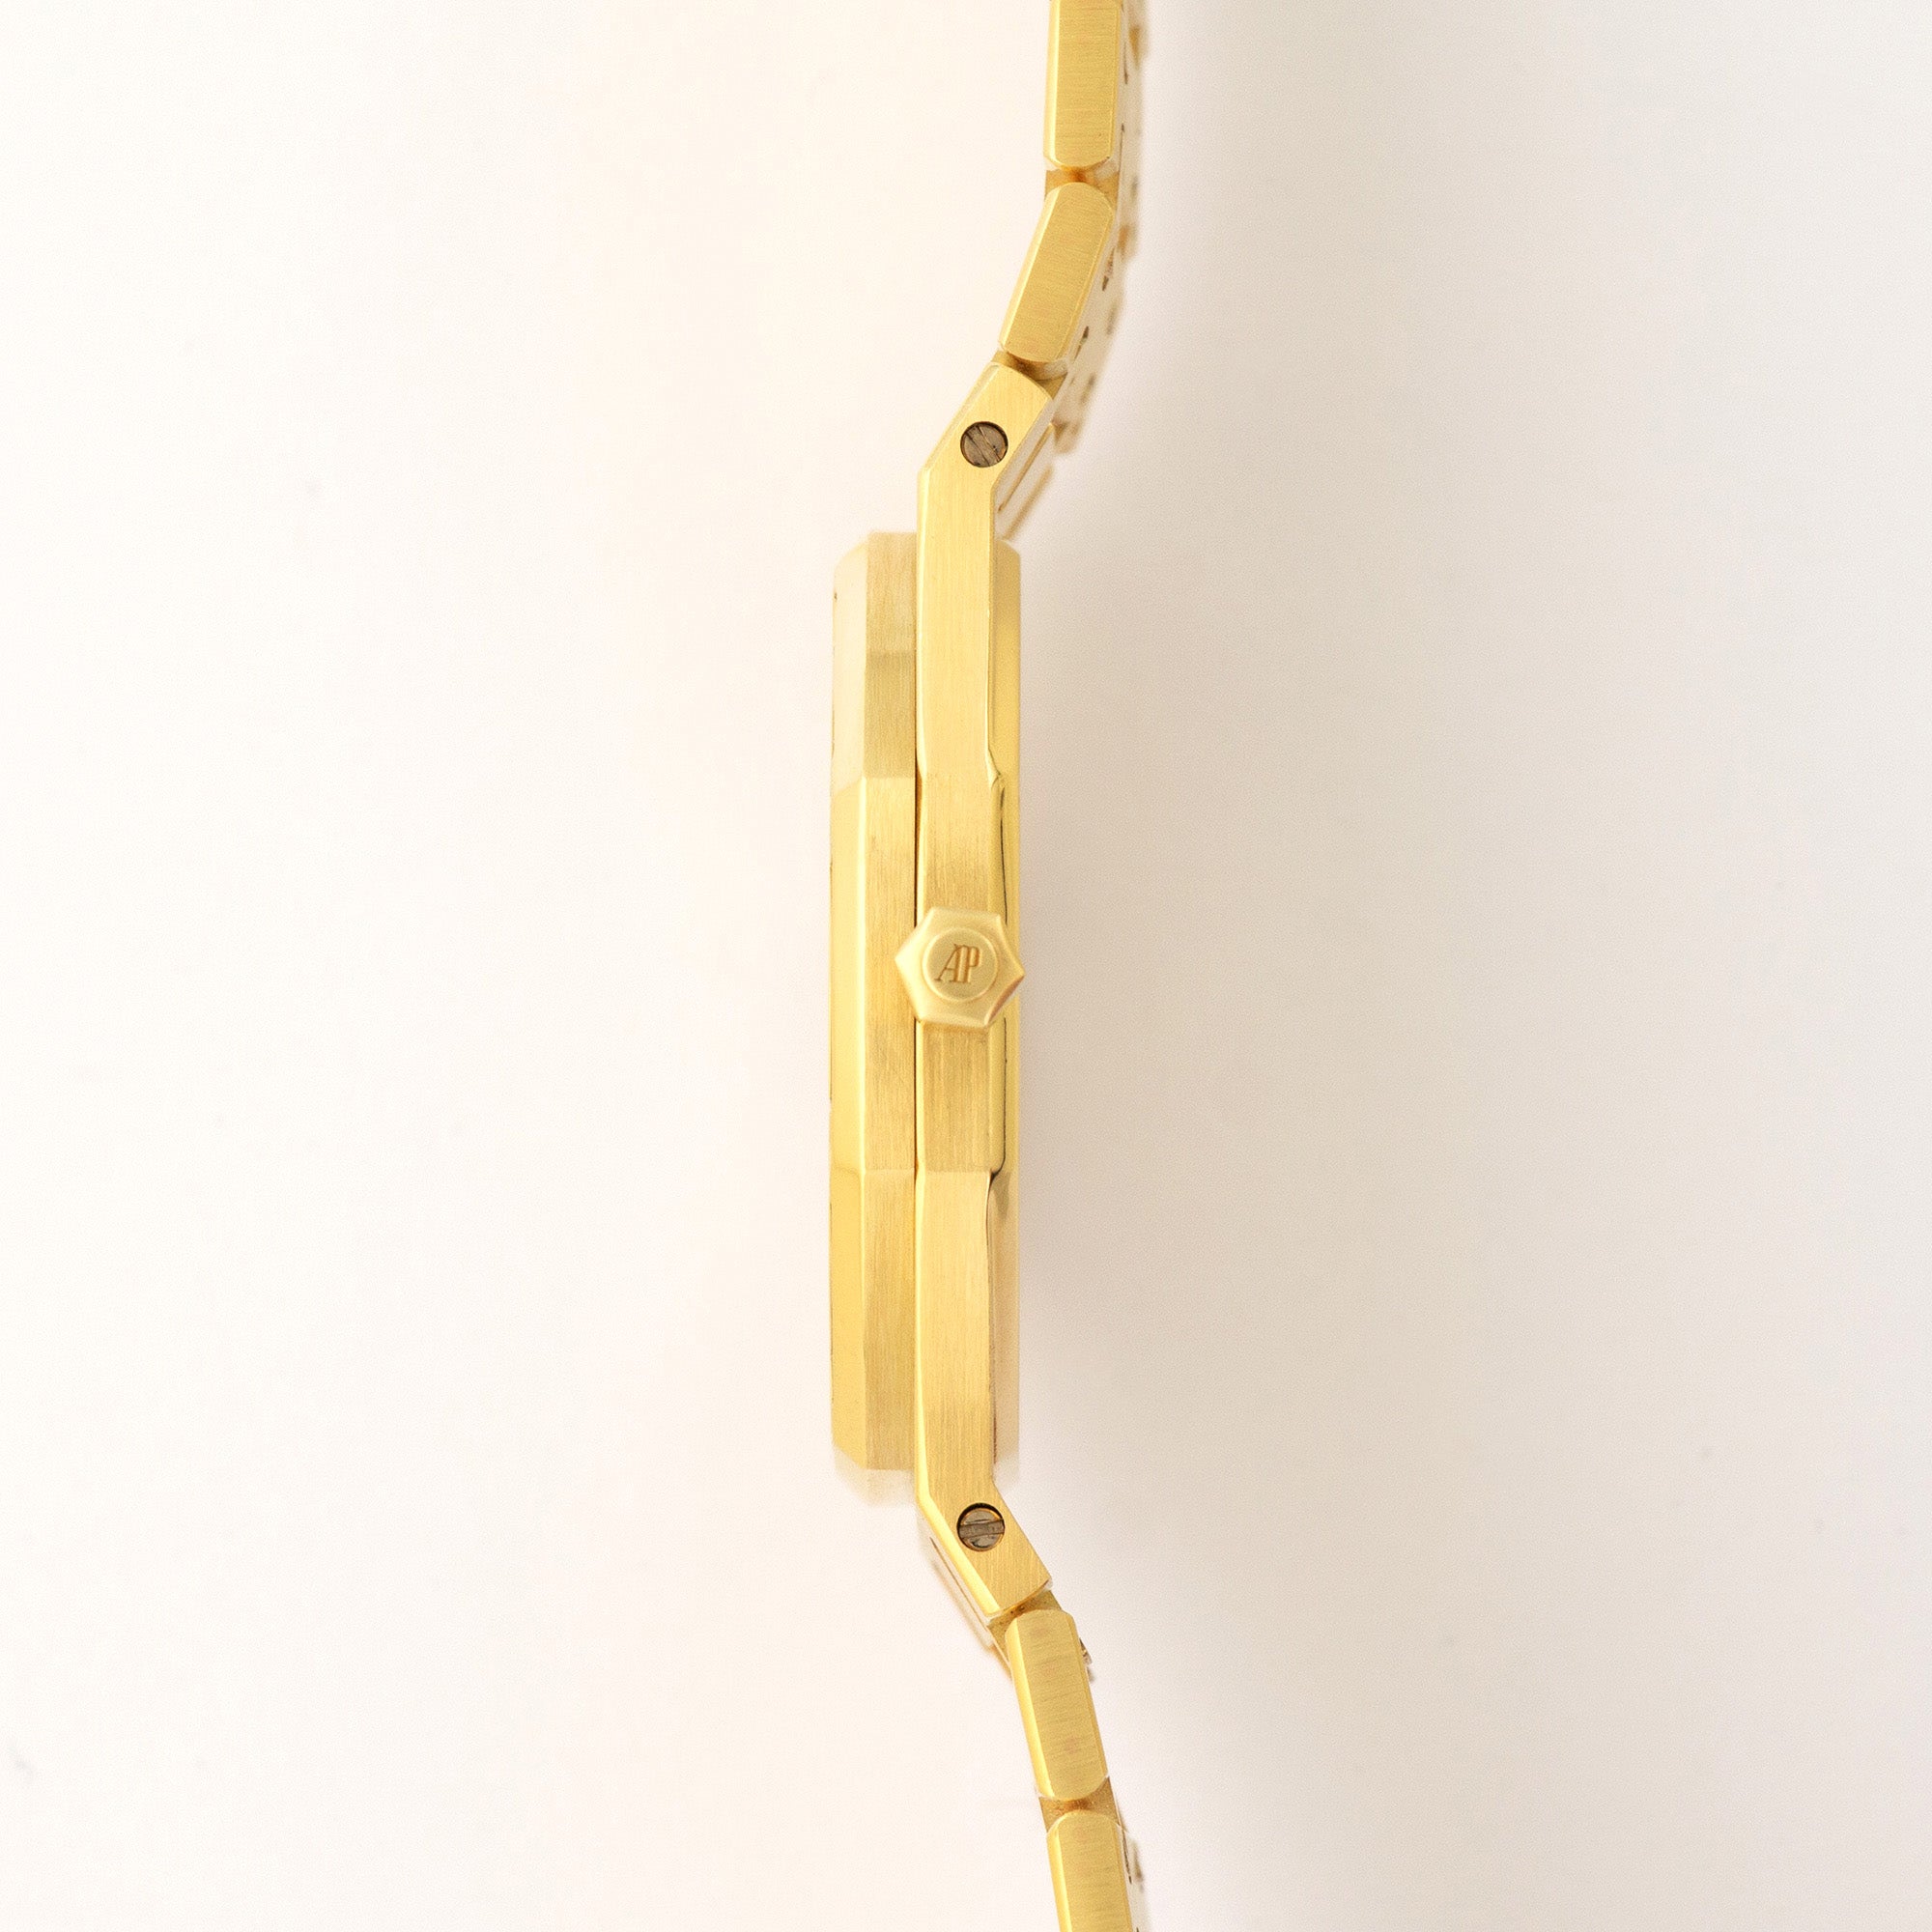 Audemars Piguet - Audemars Piguet Yellow Gold Royal Oak Triangle-Cut Diamond Watch - The Keystone Watches